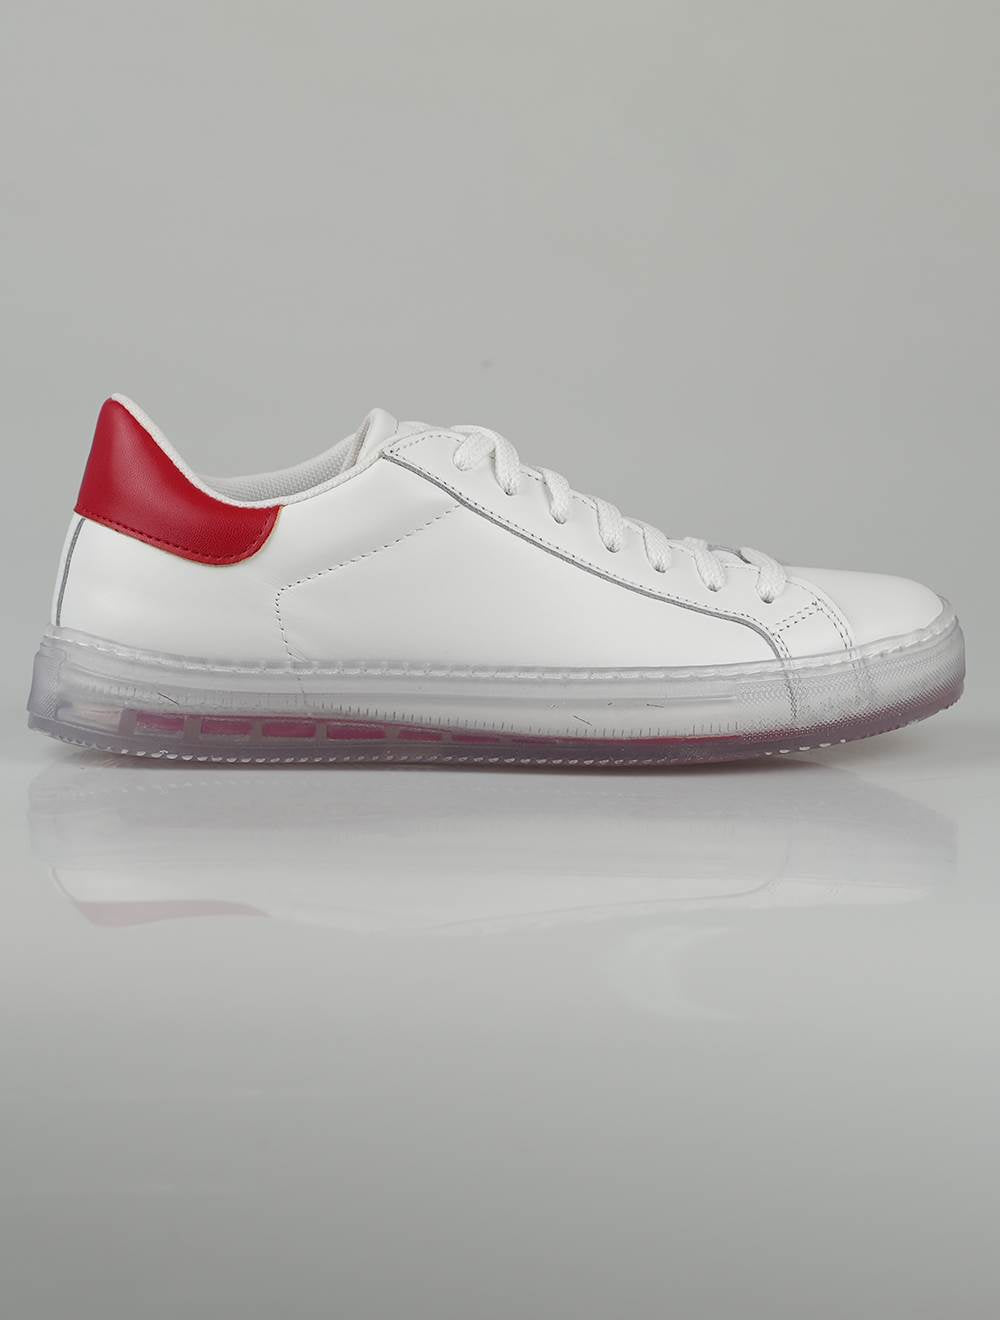 Քետon White Red Leather Sneakers հատուկ հրատարակում